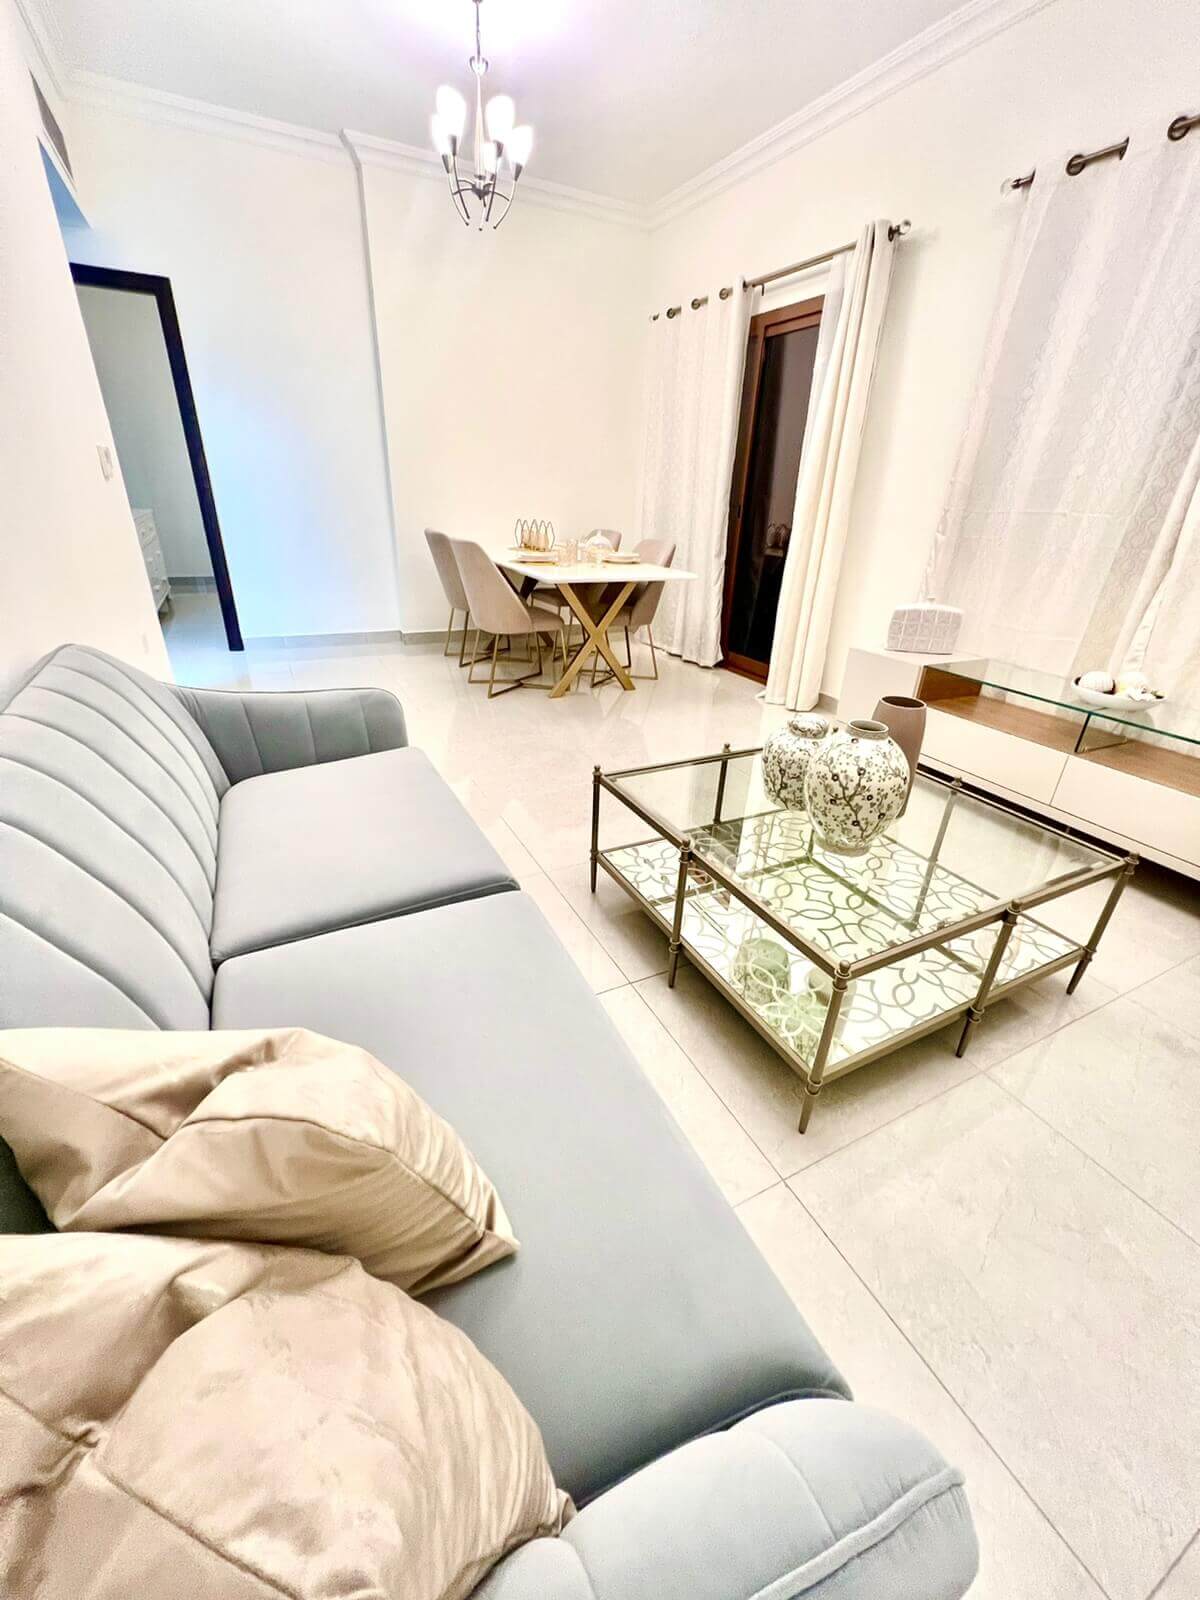 شقق سكنية للبيع في دبي موقع العقاري الإمارات Residential apartments for sale in Dubai